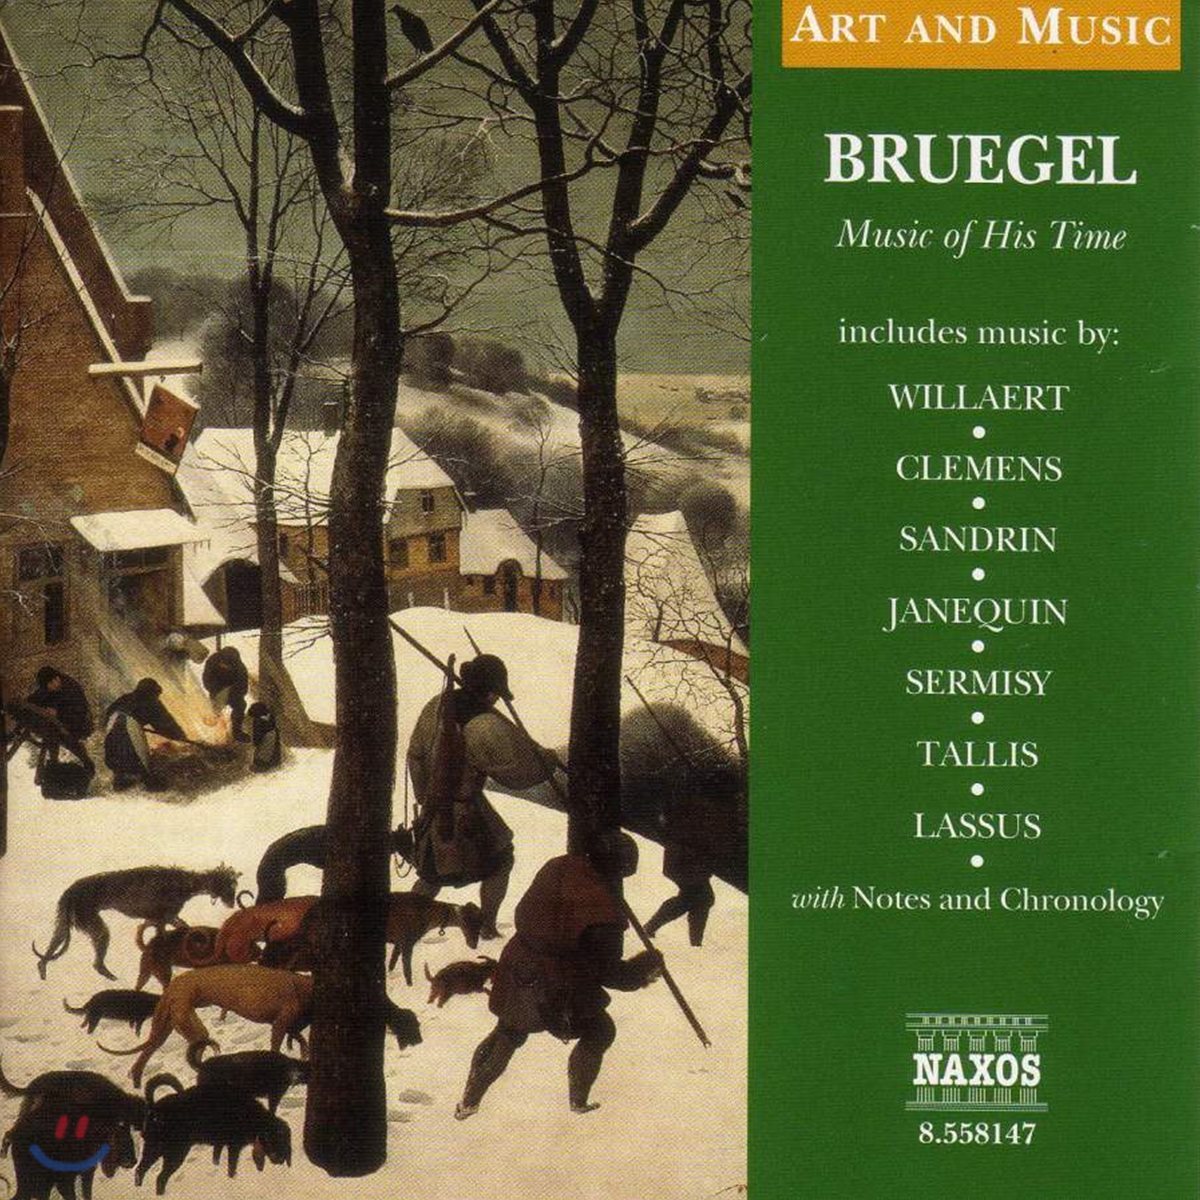 브뤼겔 시대의 음악 - 빌라르트 / 탈리스 / 라수스 (Art & Music, Bruegel Music of His Time - Willaert / Tallis / Lassus)